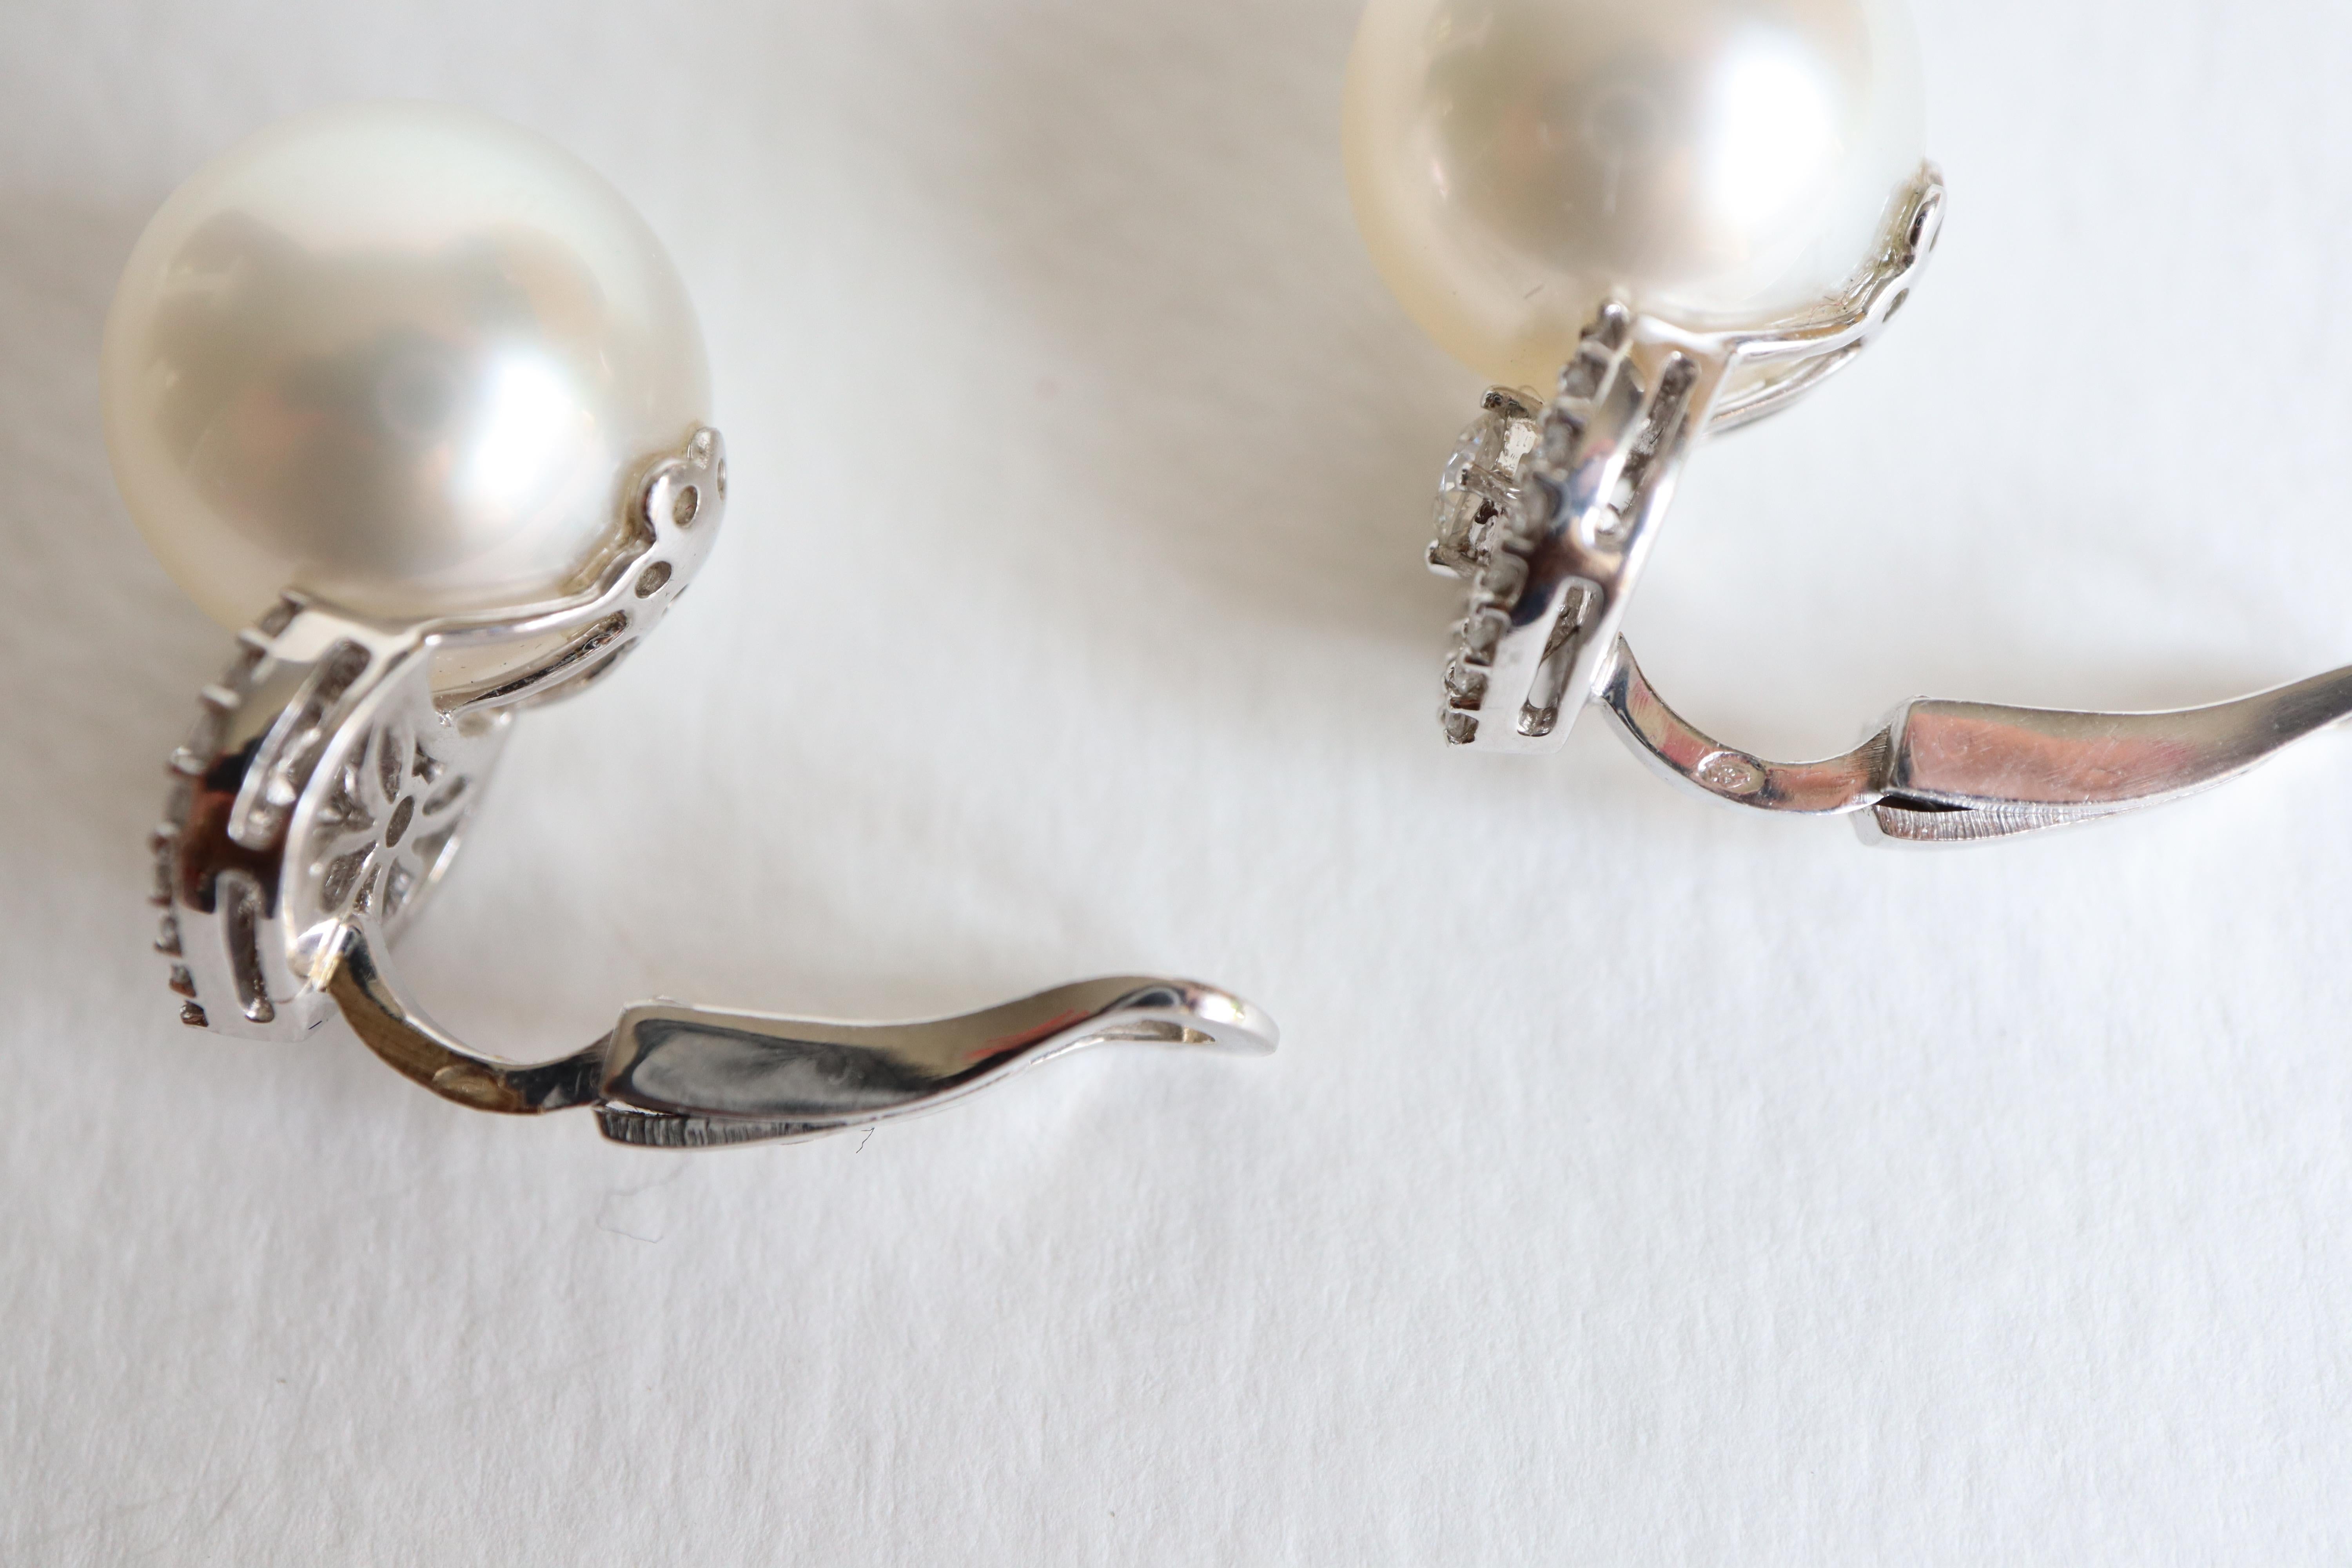 pearl clip on earrings